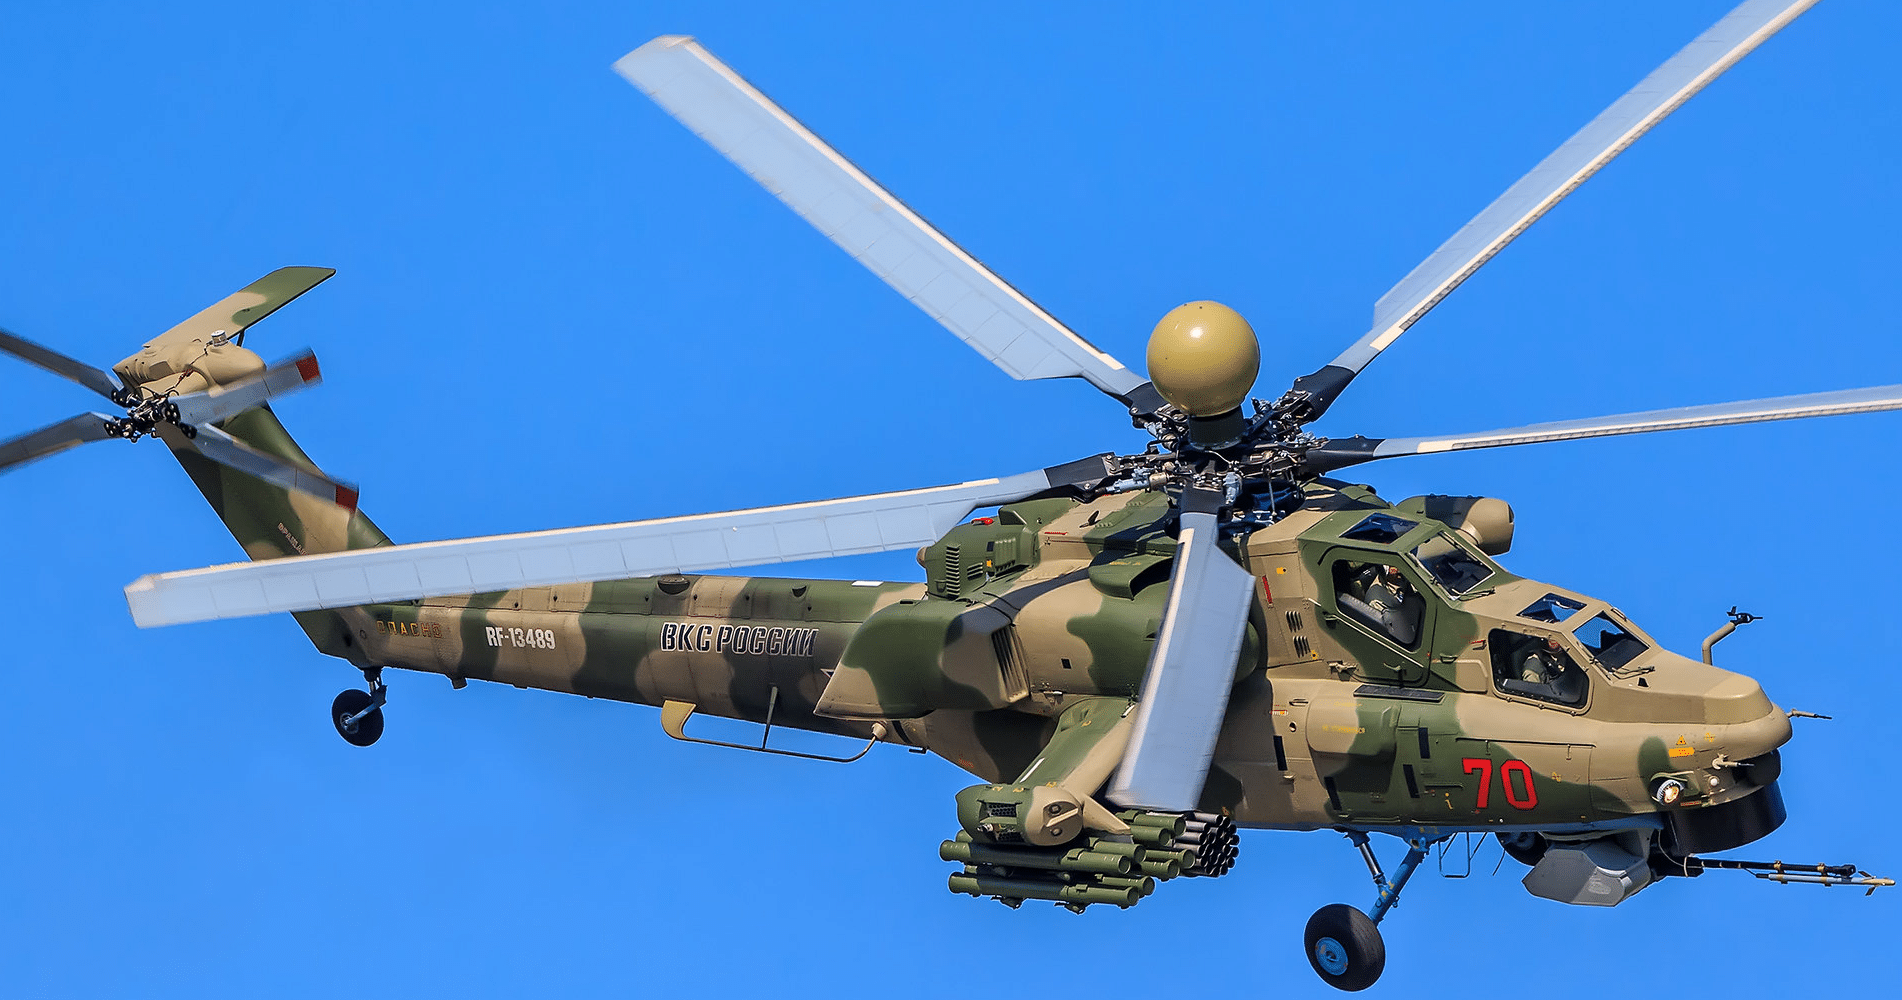 Ми-28н "ночной охотник" - российский ударный вертолет